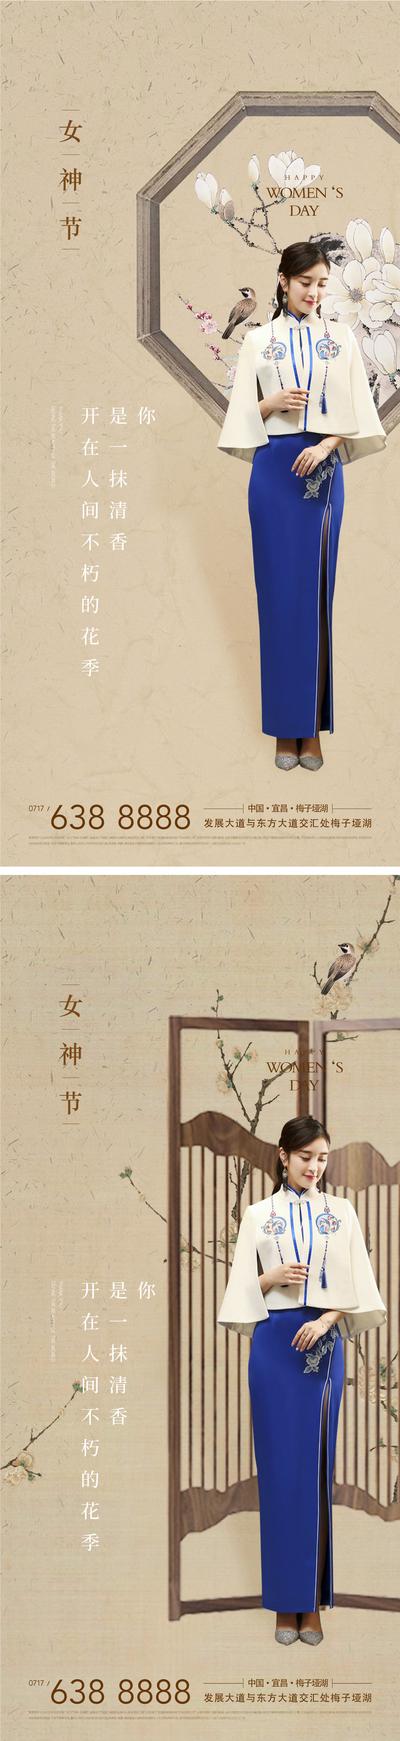 南门网 海报 房地产 公历节日 三八 女神节 妇女节 中式 旗袍 系列